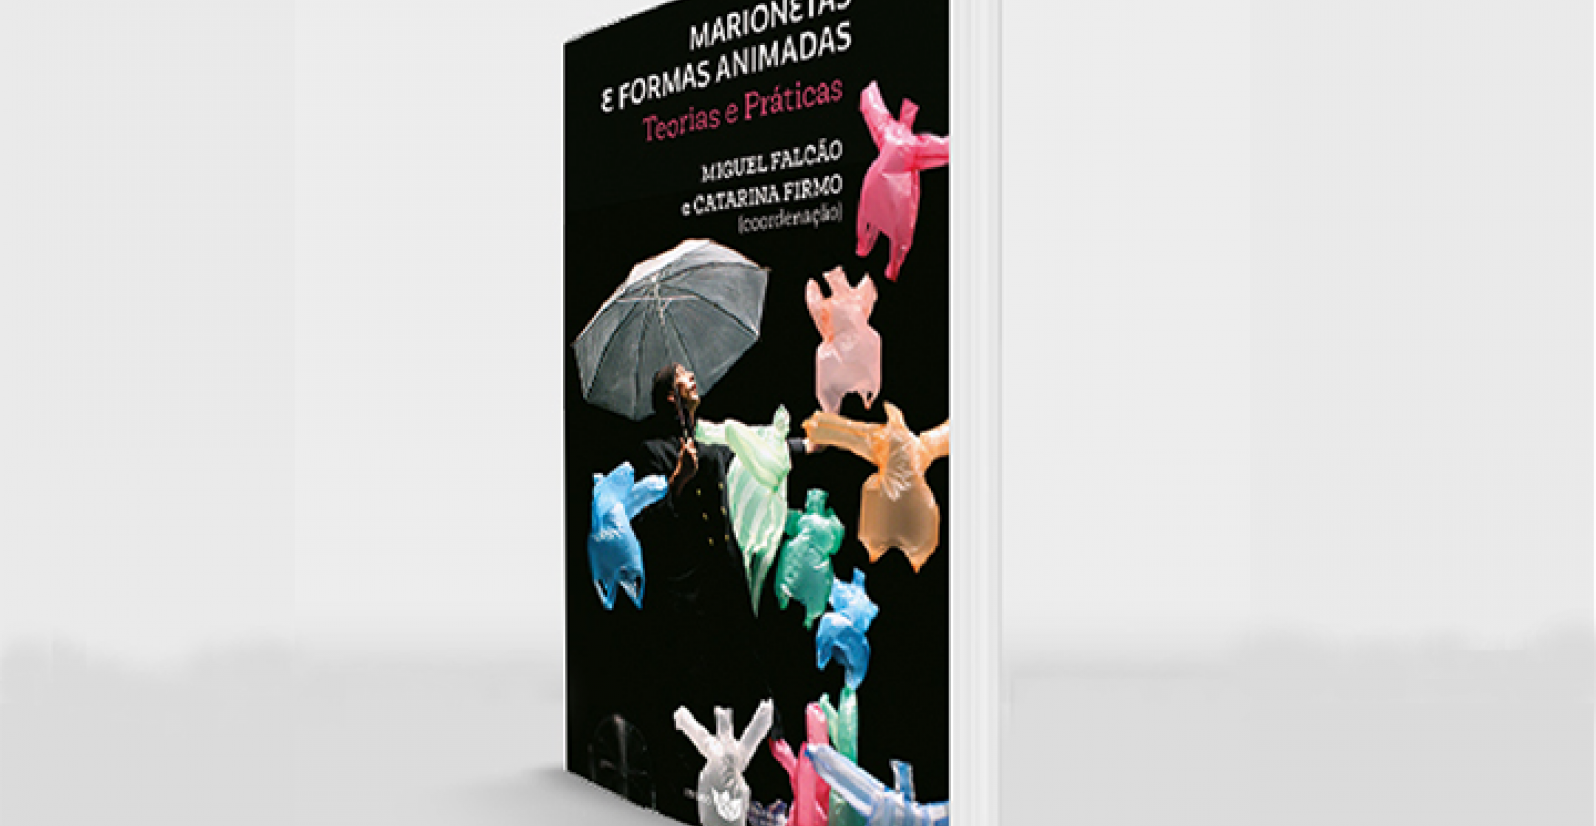 Livro: Teatro de Marionetas e Formas Animadas - Teorias e Práticas